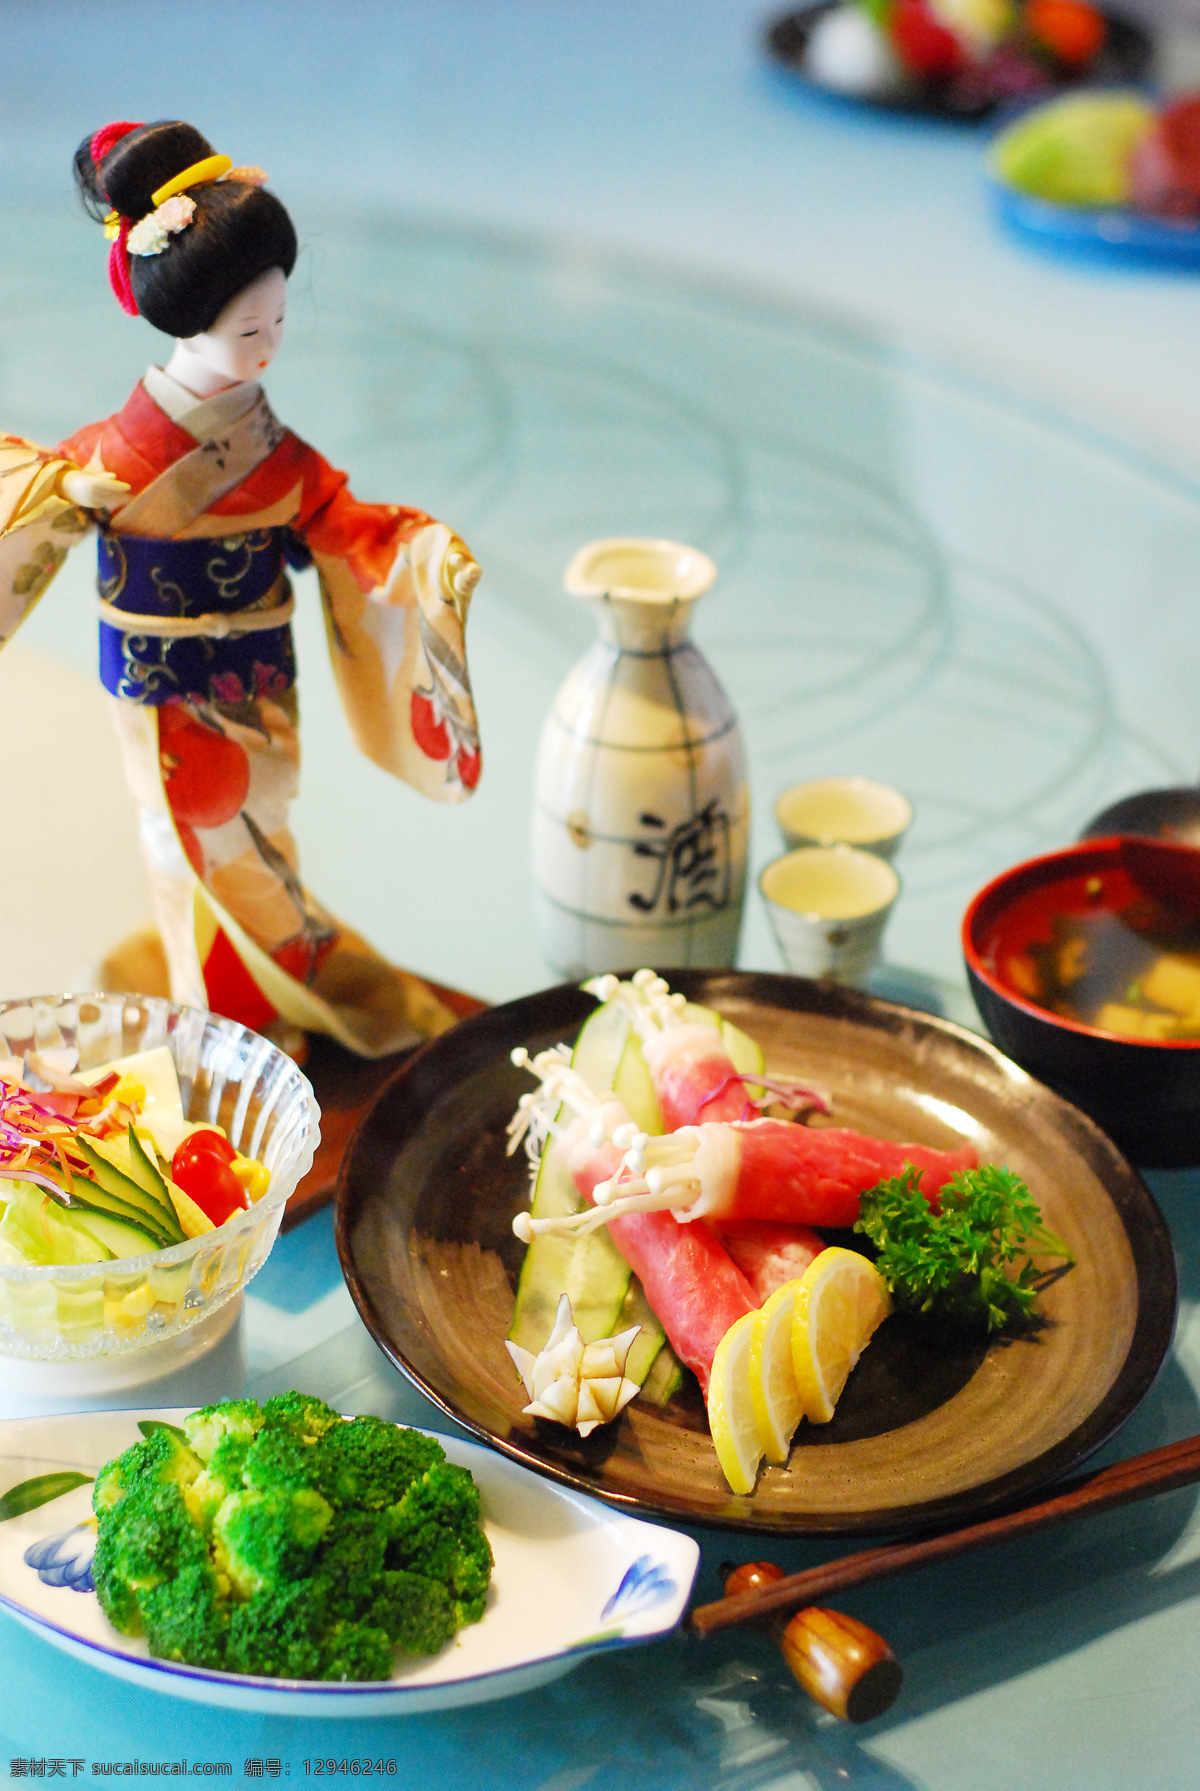 日本料理 日式料理 日本美食 日式餐饮 日式和风 日本人偶 清酒 牛肉豆芽卷 西兰花 西餐美食 餐饮美食